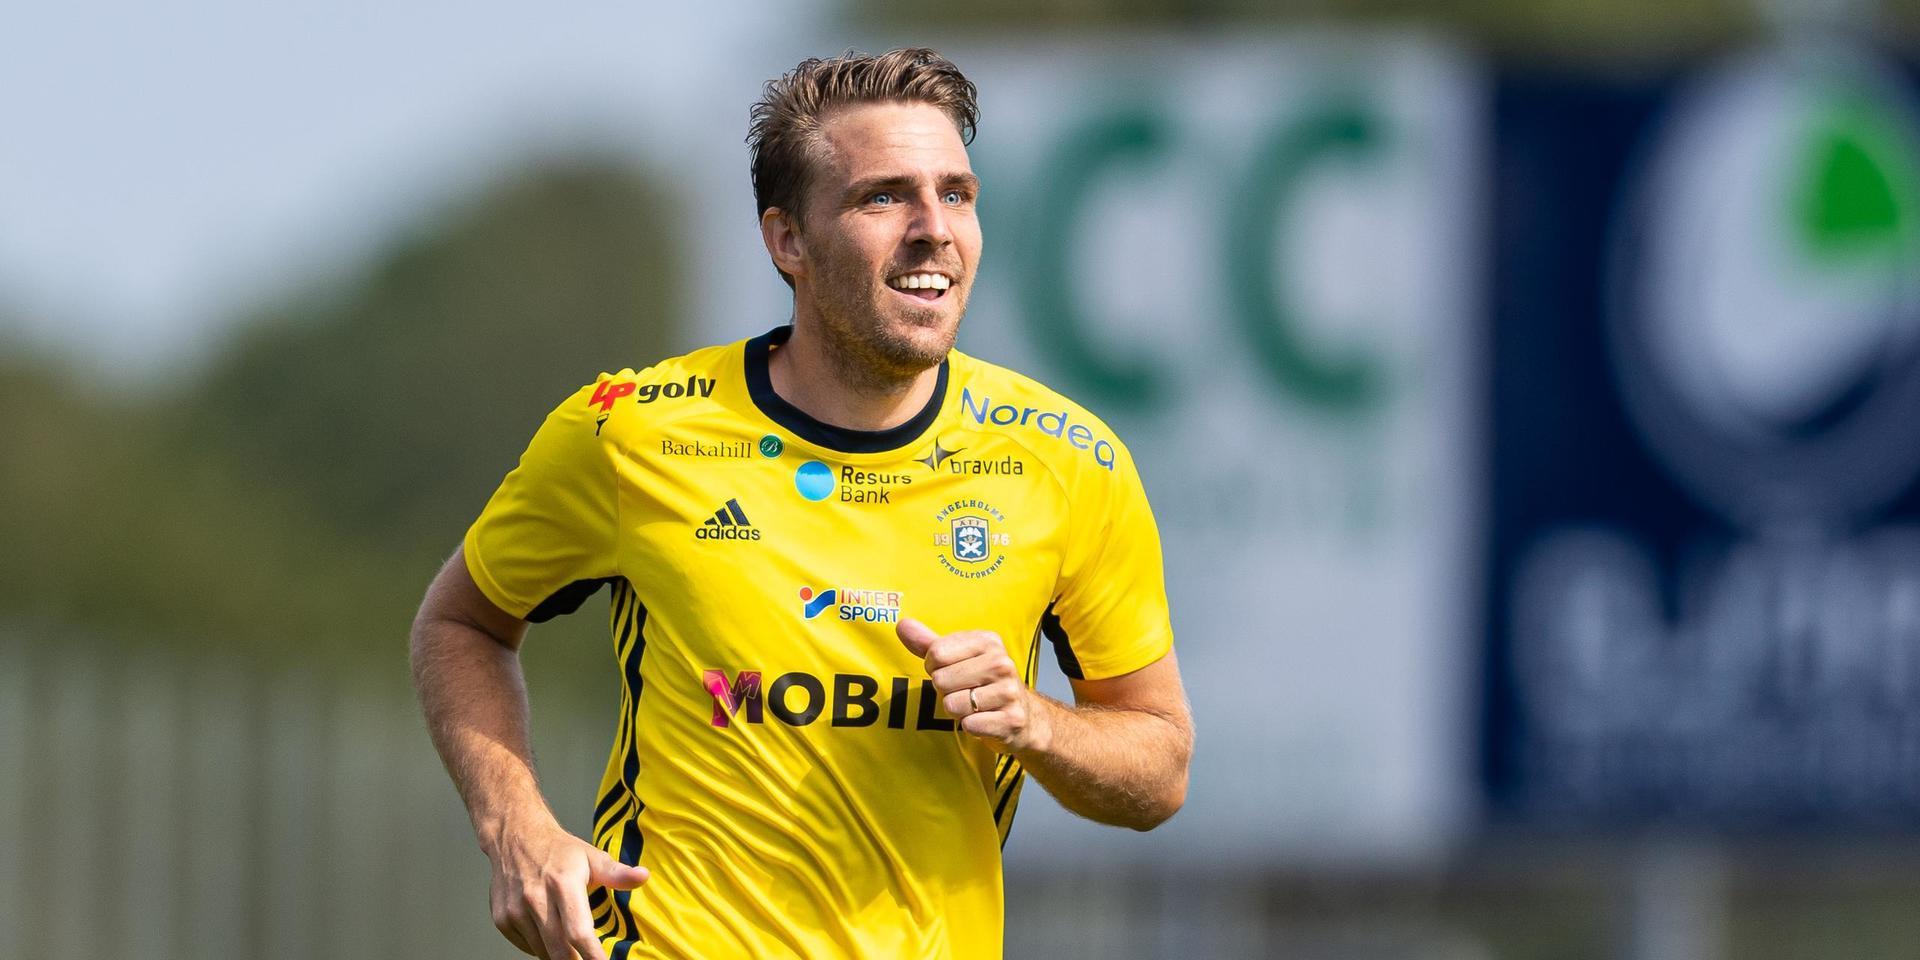 Ängelholms ex-HBK:are, Johan Oremo, kan prisas som bästa anfallare i division 2-fotbollen.